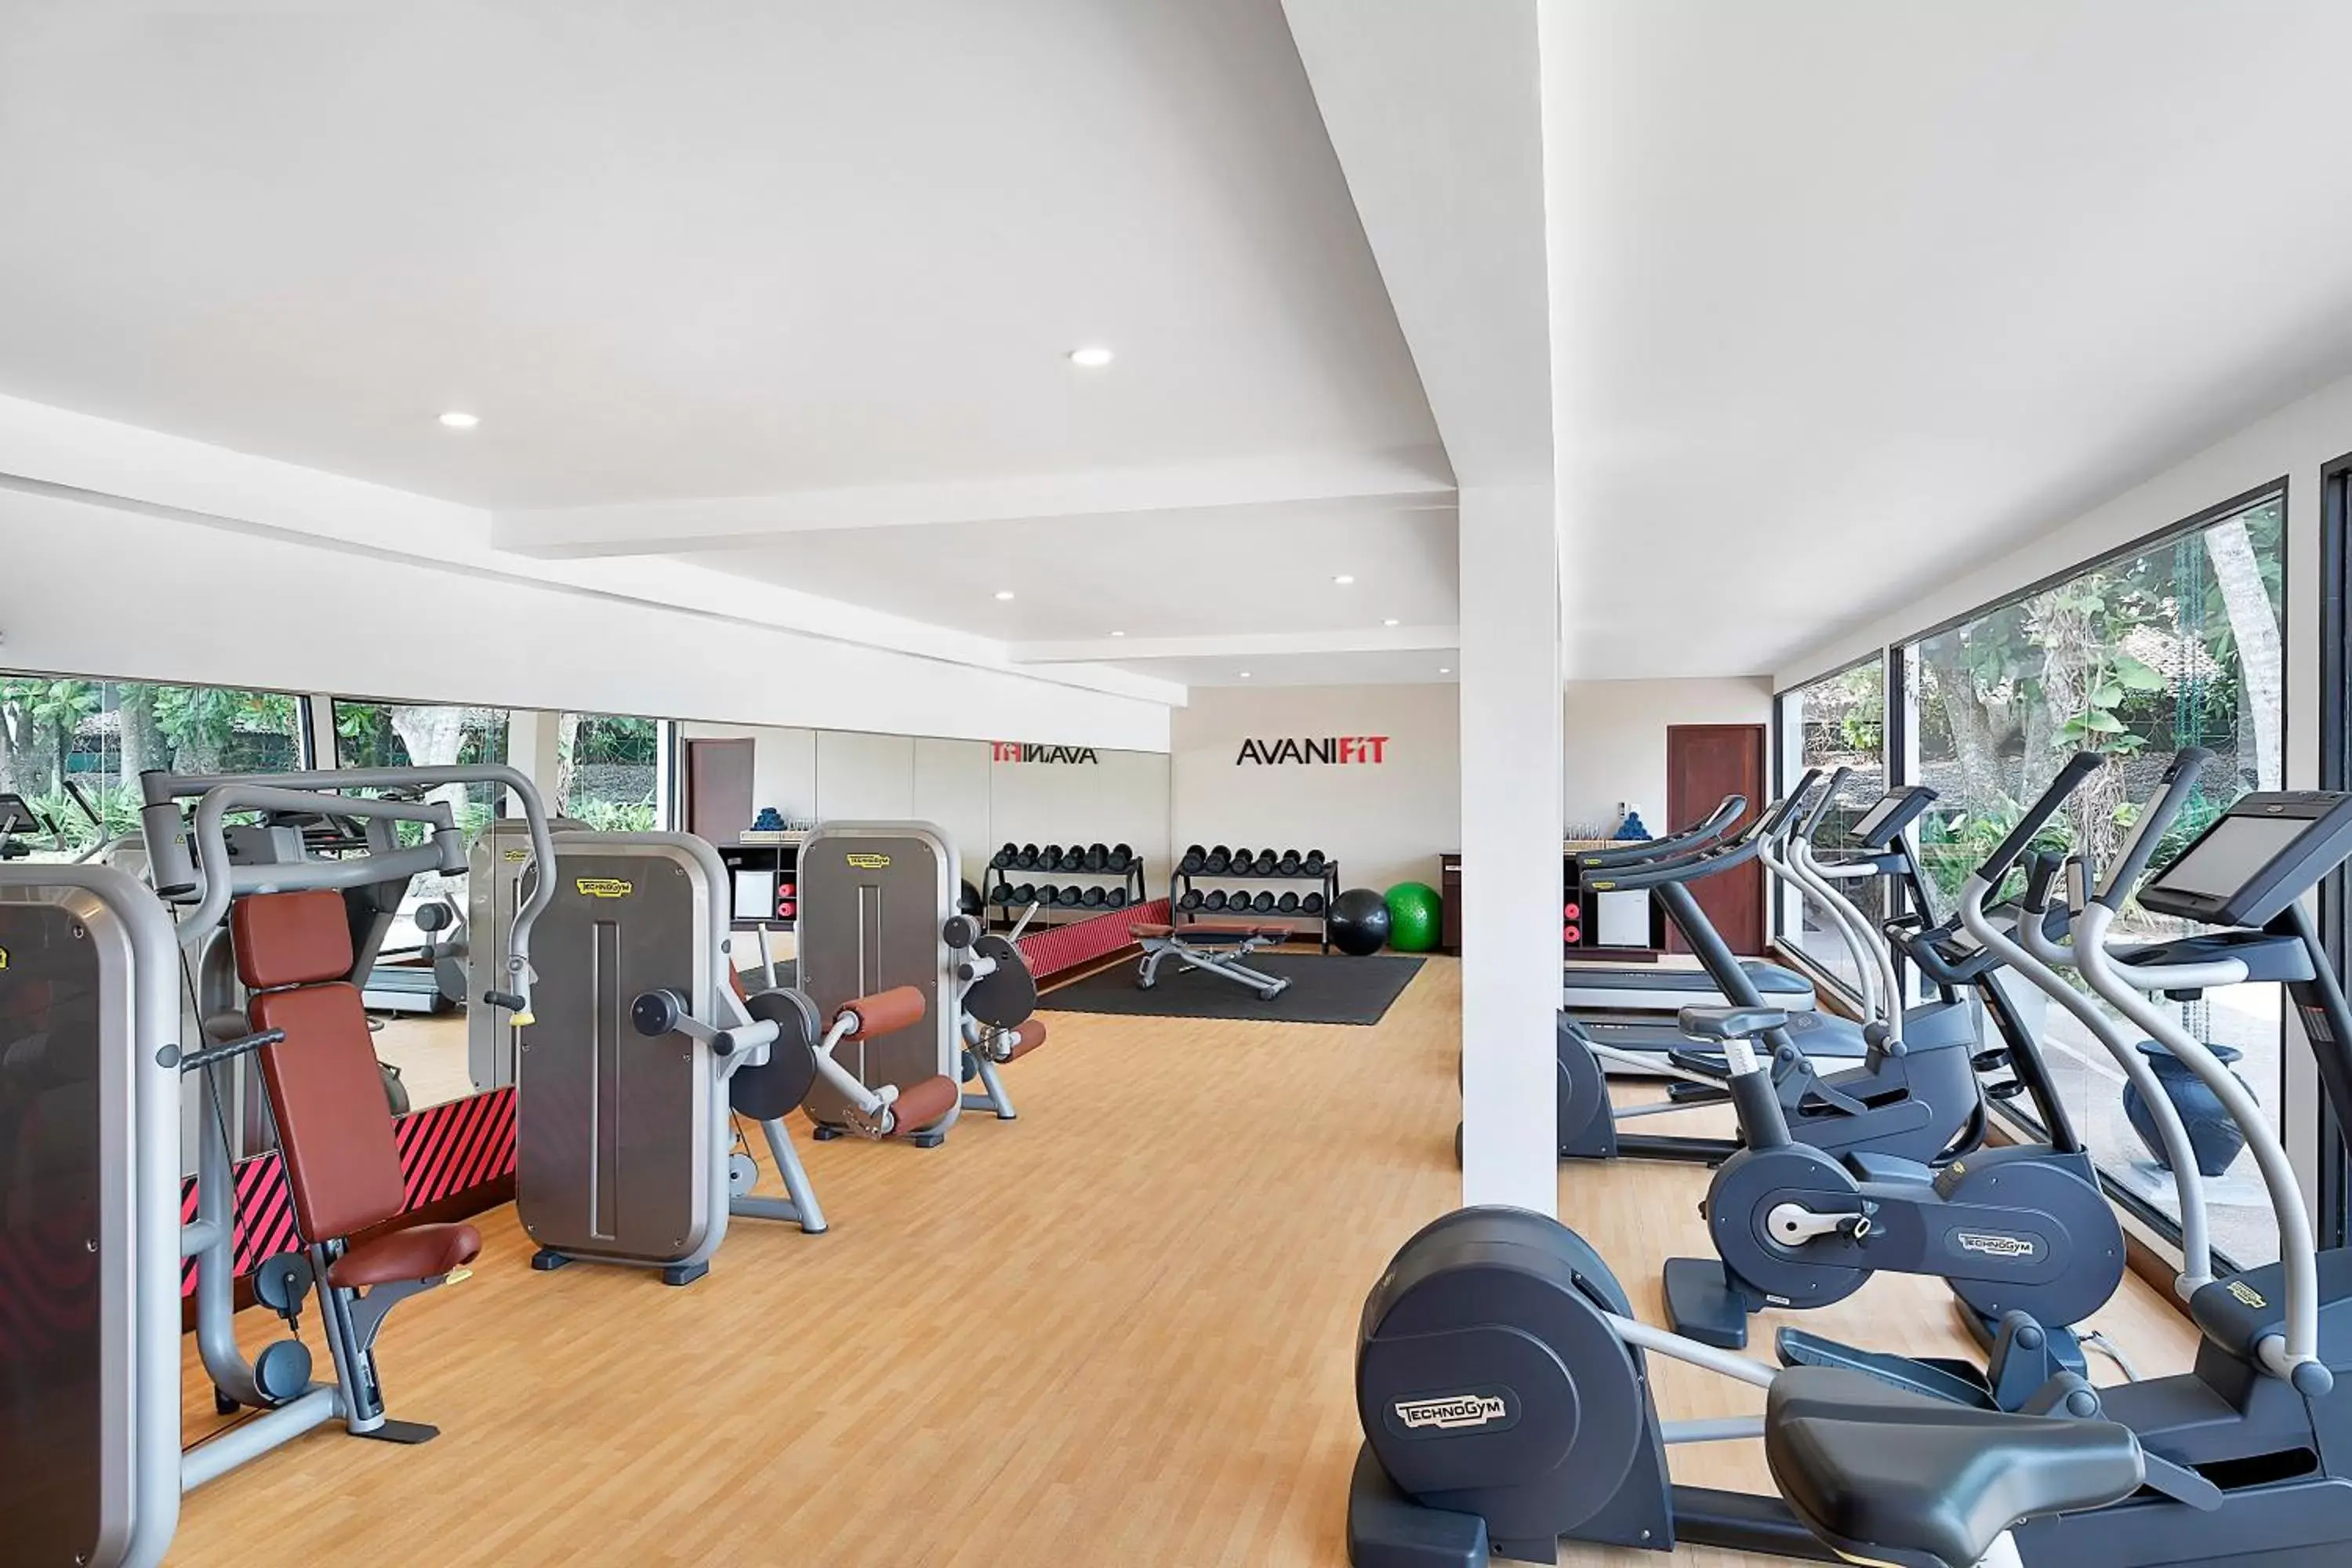 Fitness centre/facilities, Fitness Center/Facilities in Avani Kalutara Resort